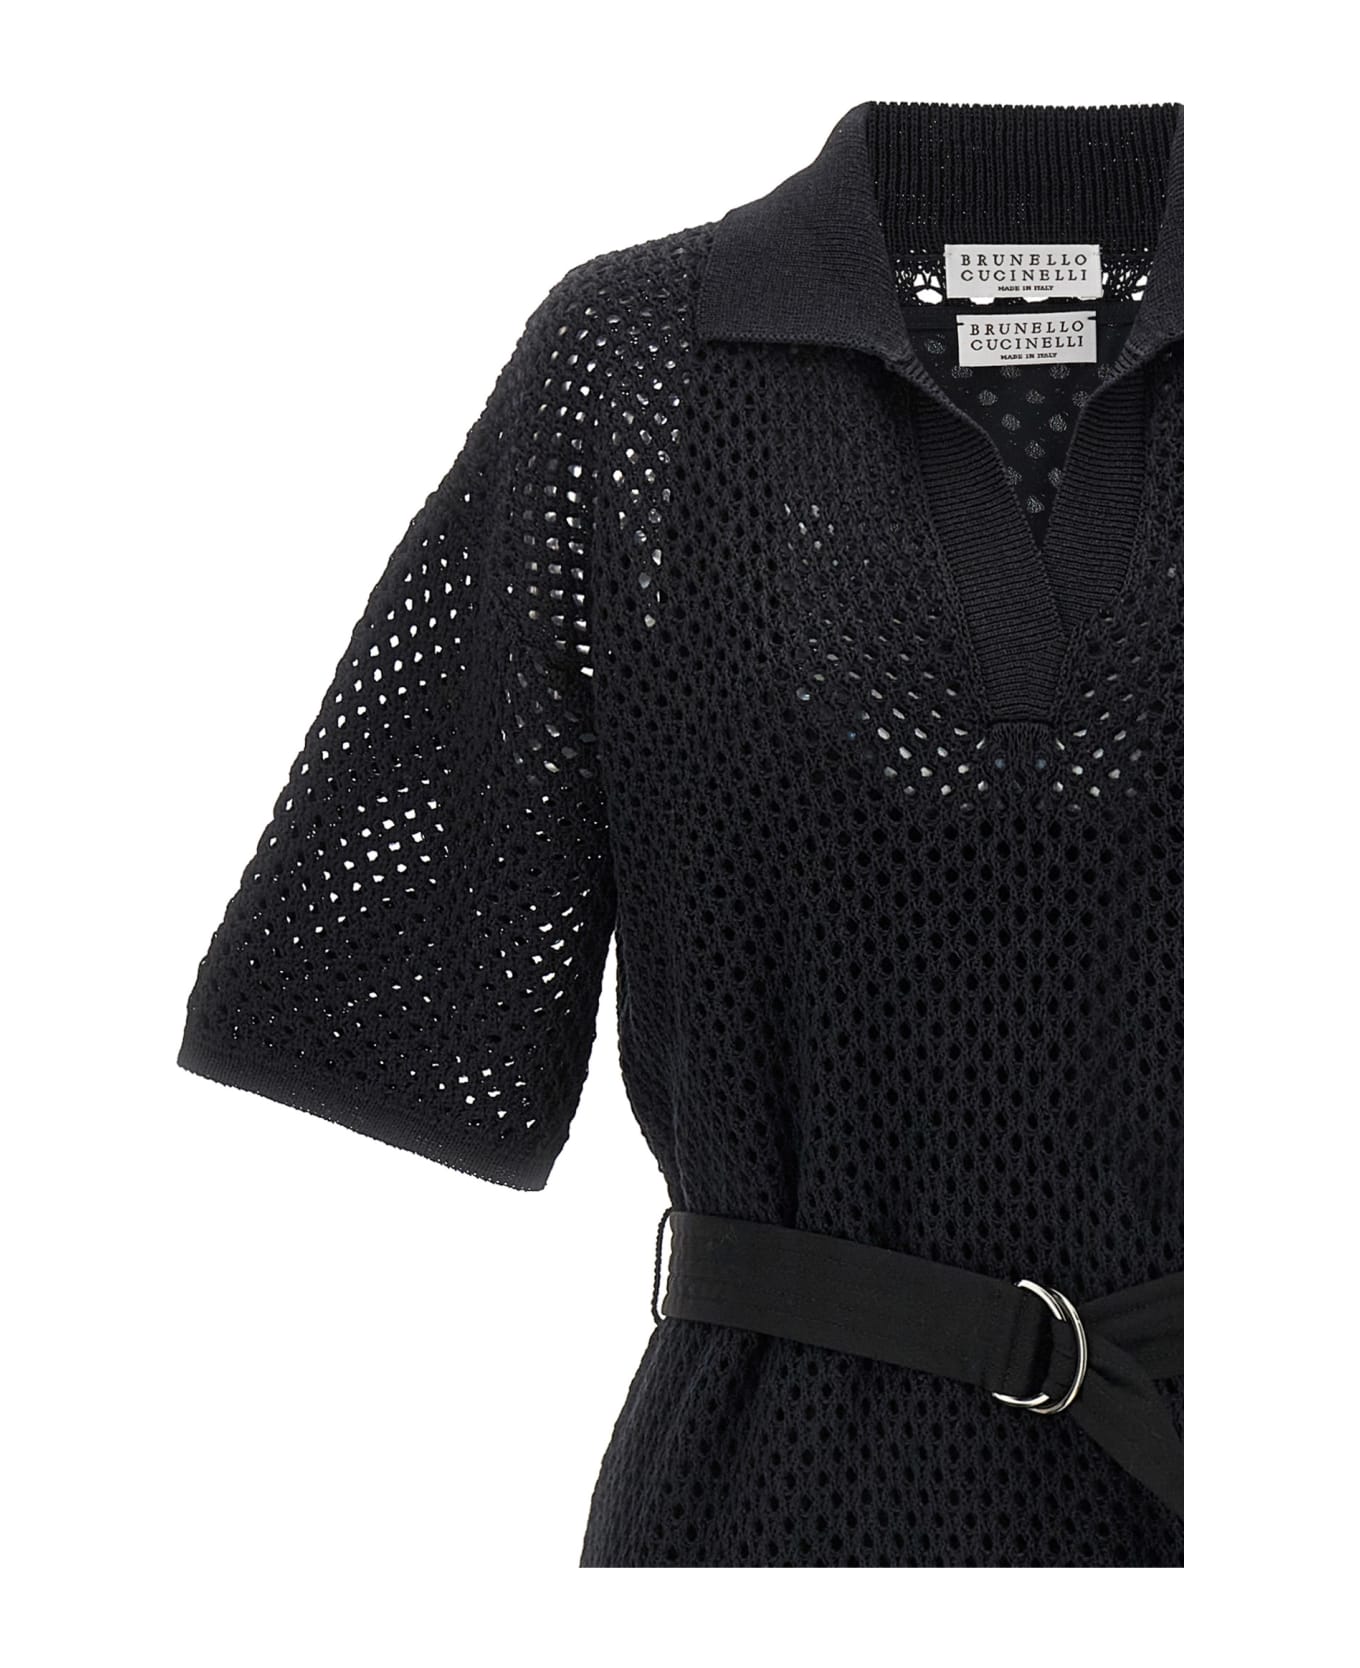 Brunello Cucinelli Openwork Cotton Knit gloves Polo Dress - Black